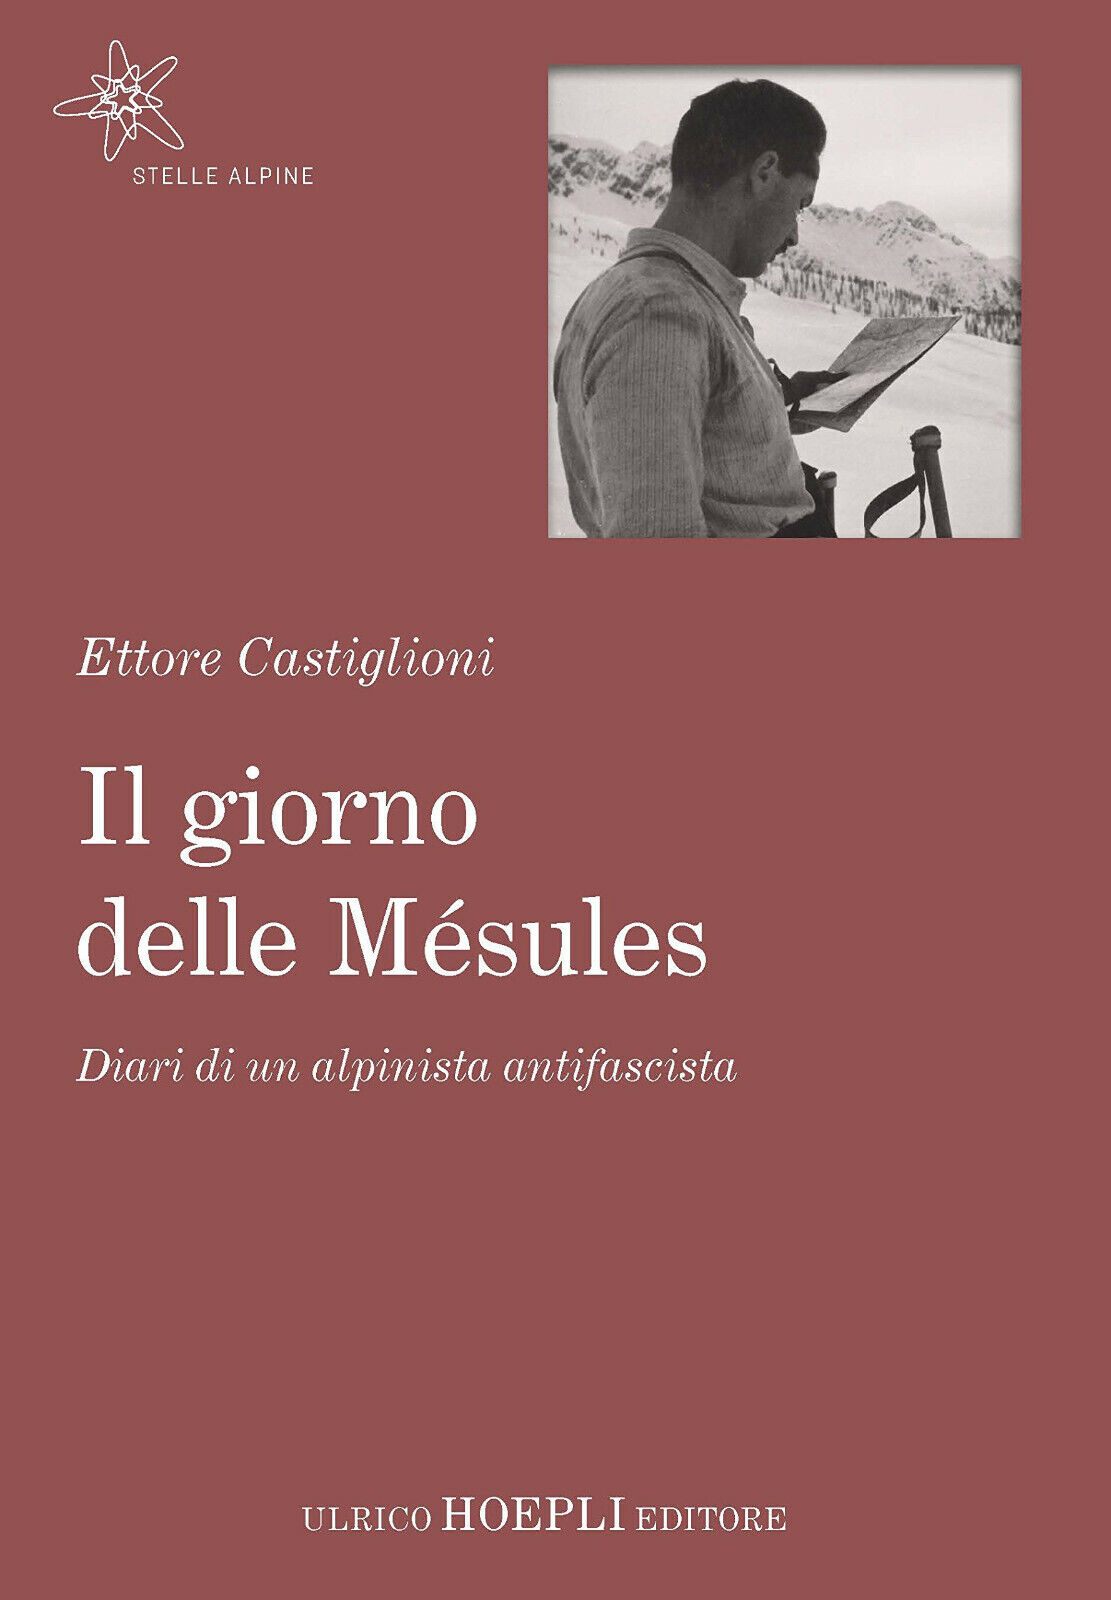 Il giorno delle M?sules - Ettore Castiglioni - Hoepli, 2017 libro usato